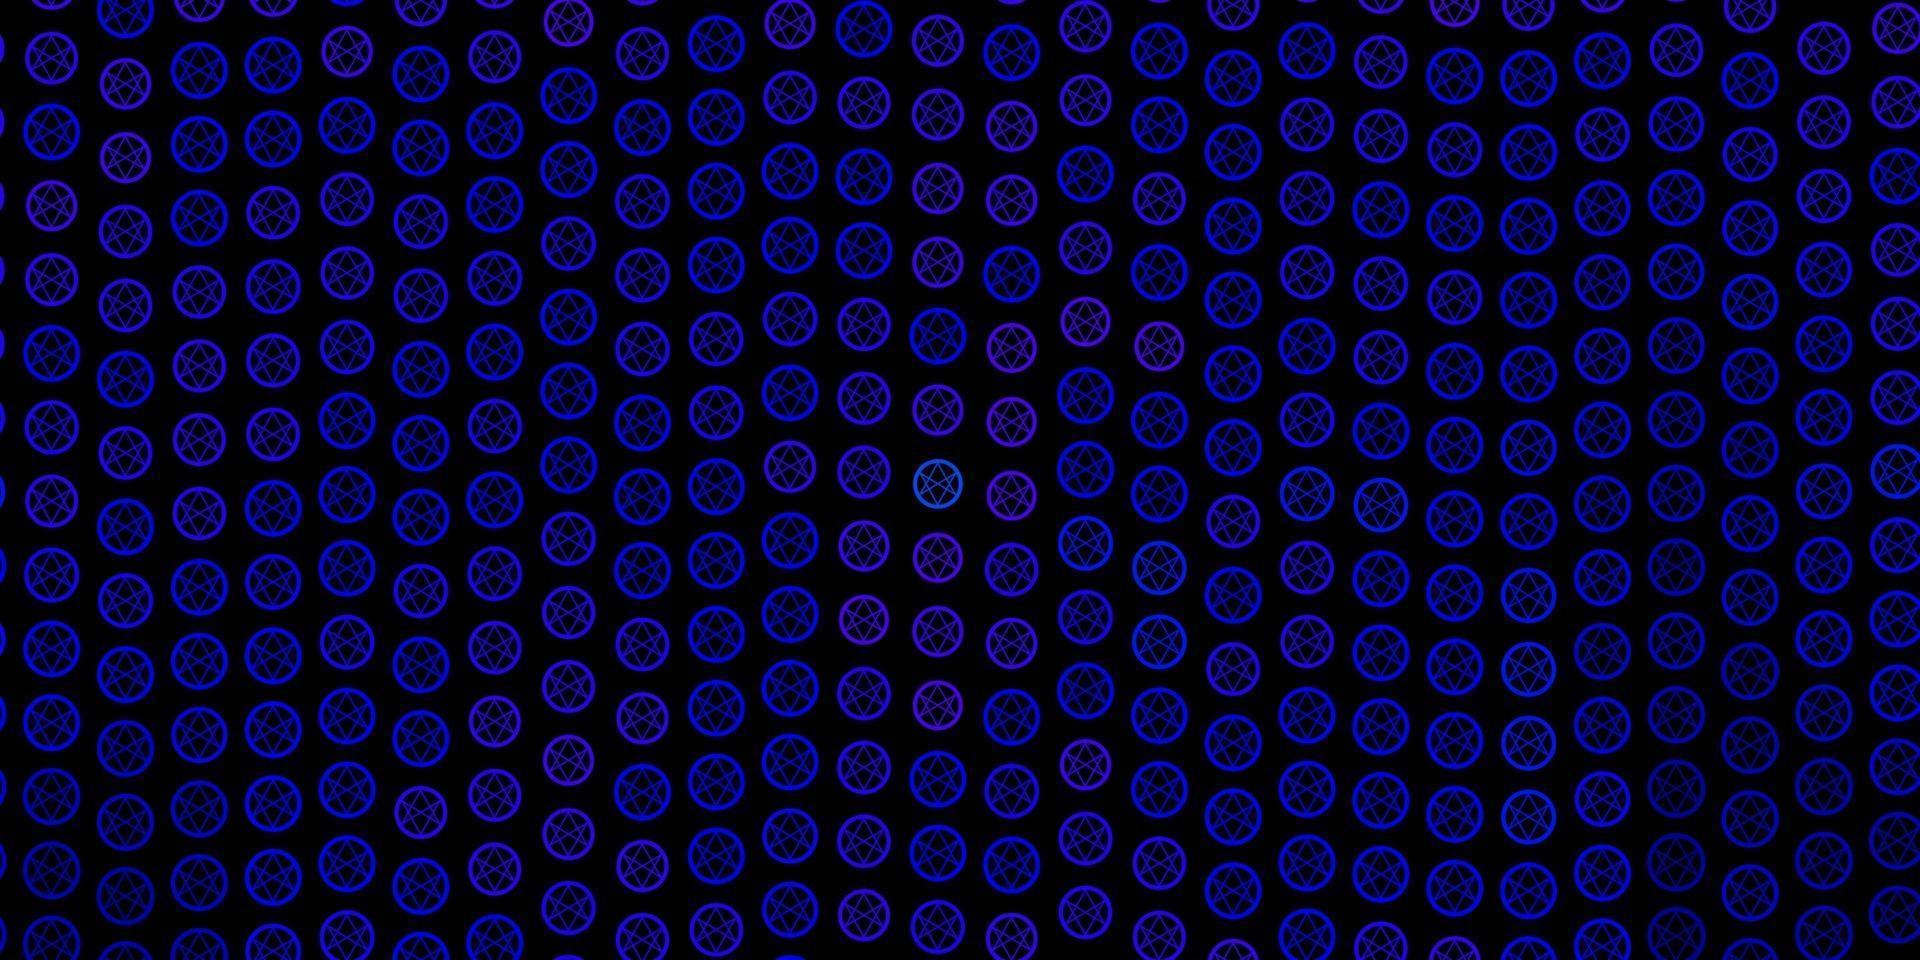 padrão de vetor azul escuro com elementos mágicos.